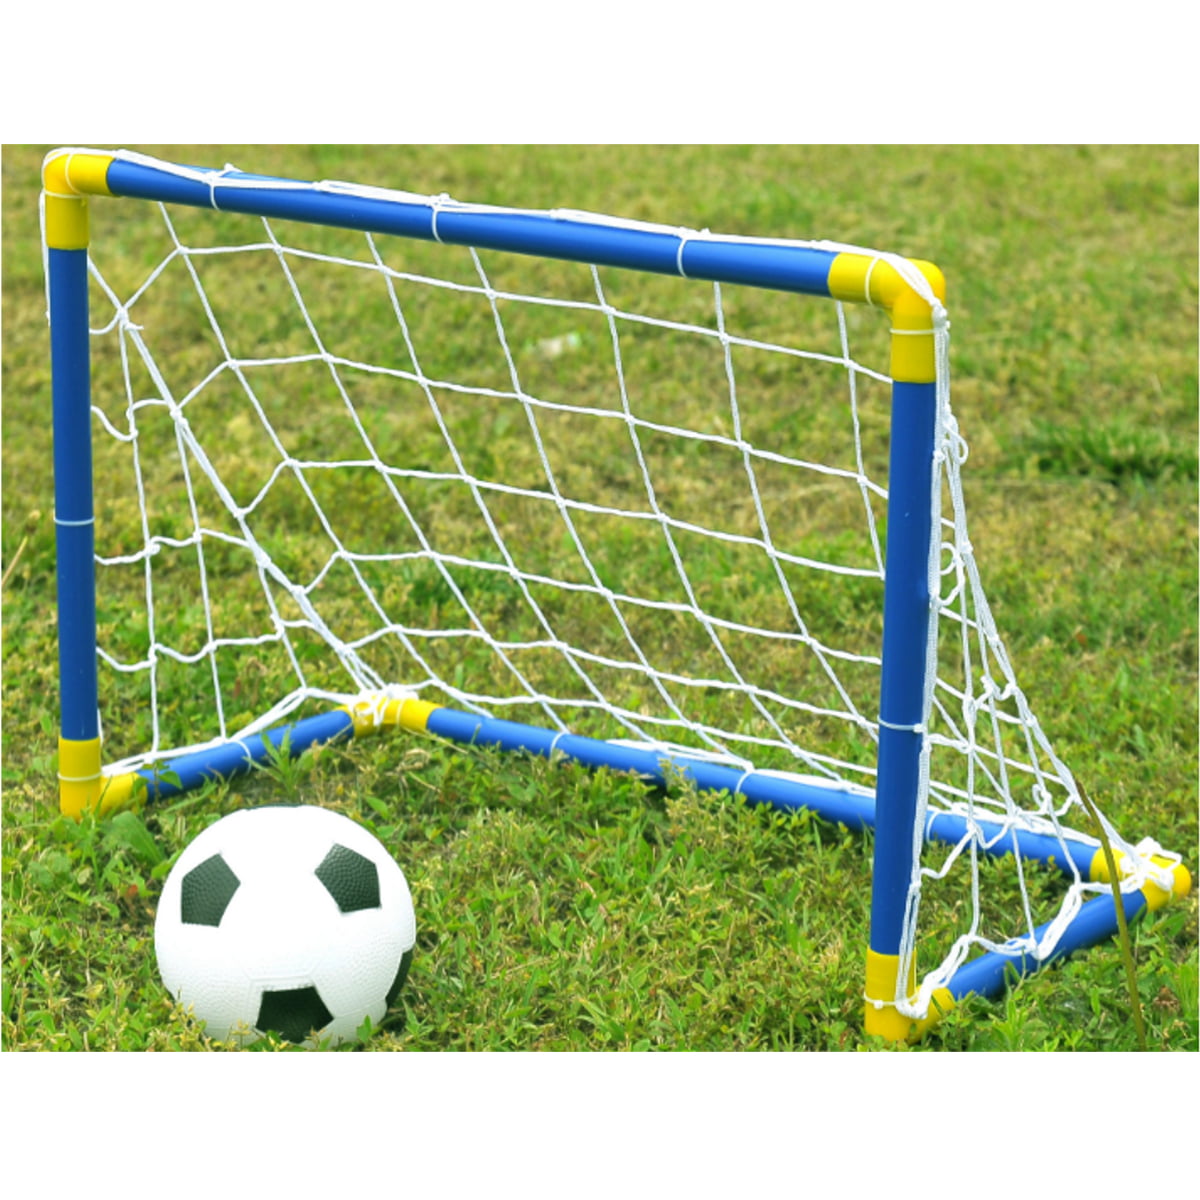 Child Folding Football Soccer Goal Post Net with Ball Pump Set Outdooor Sport❤D 